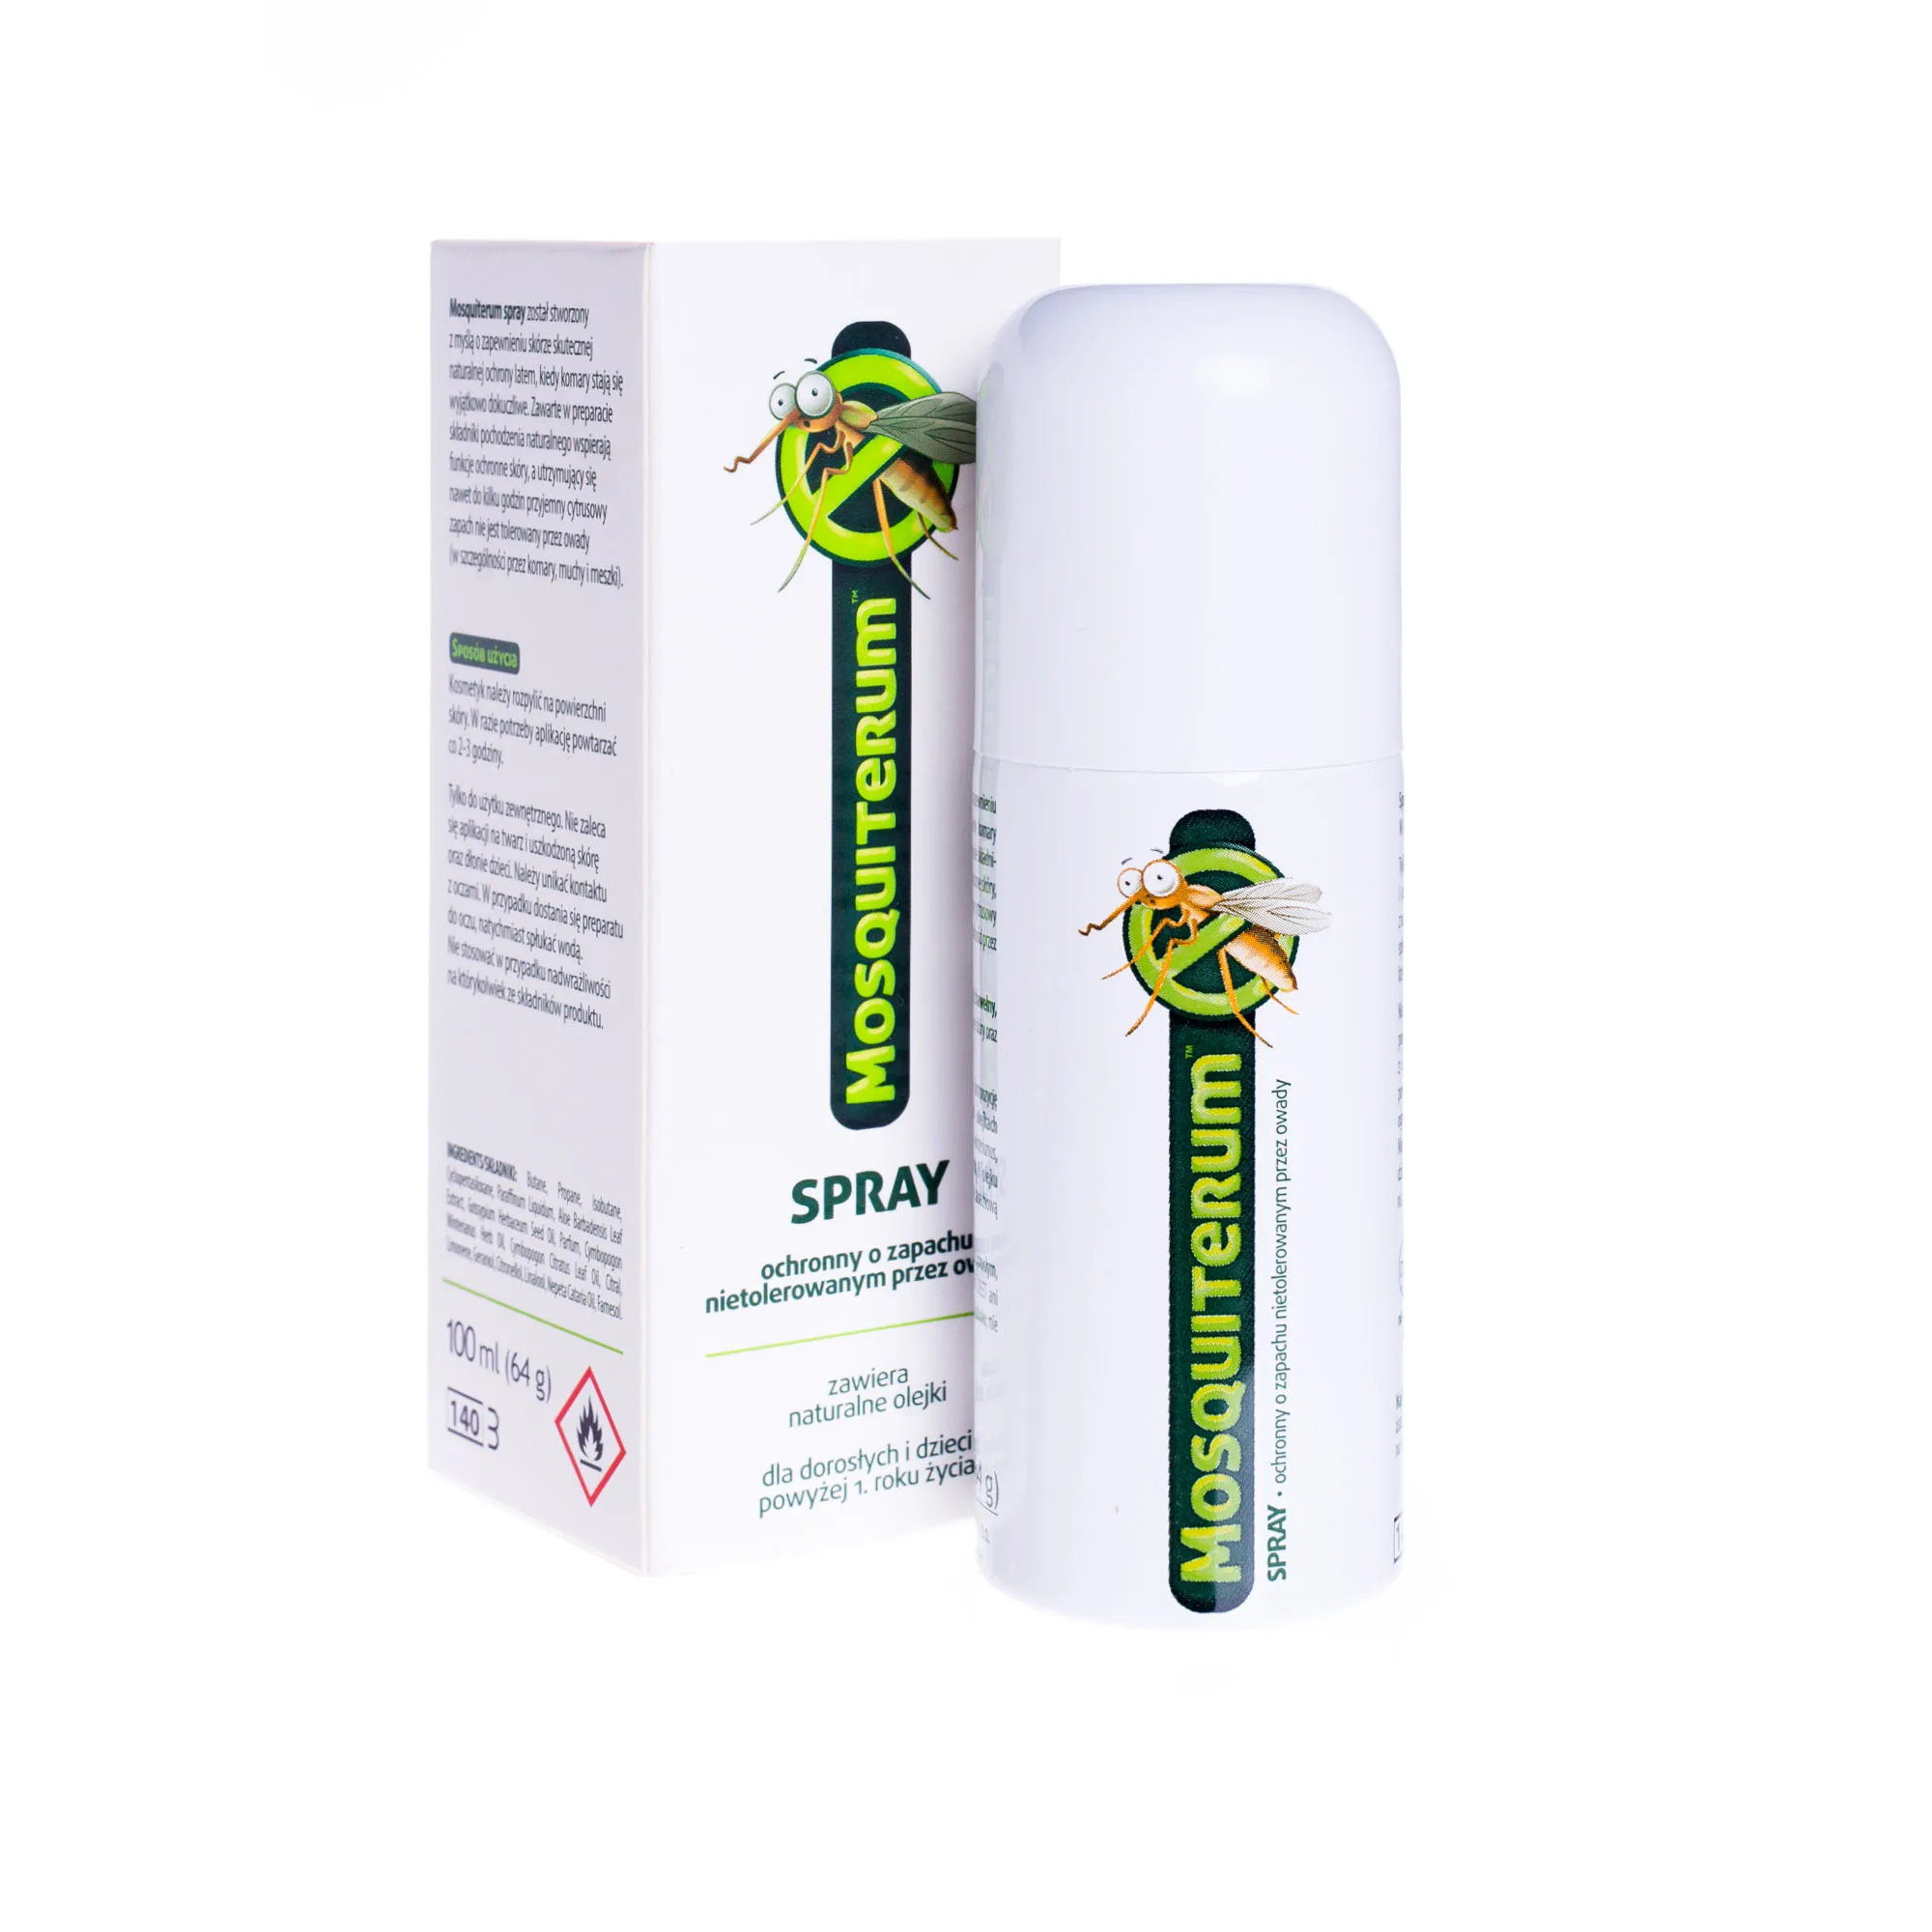 Mosquiterum, spray ochronny o zapachu nietolerowanym przez owady, 100 ml. Data ważności 31.05.2024